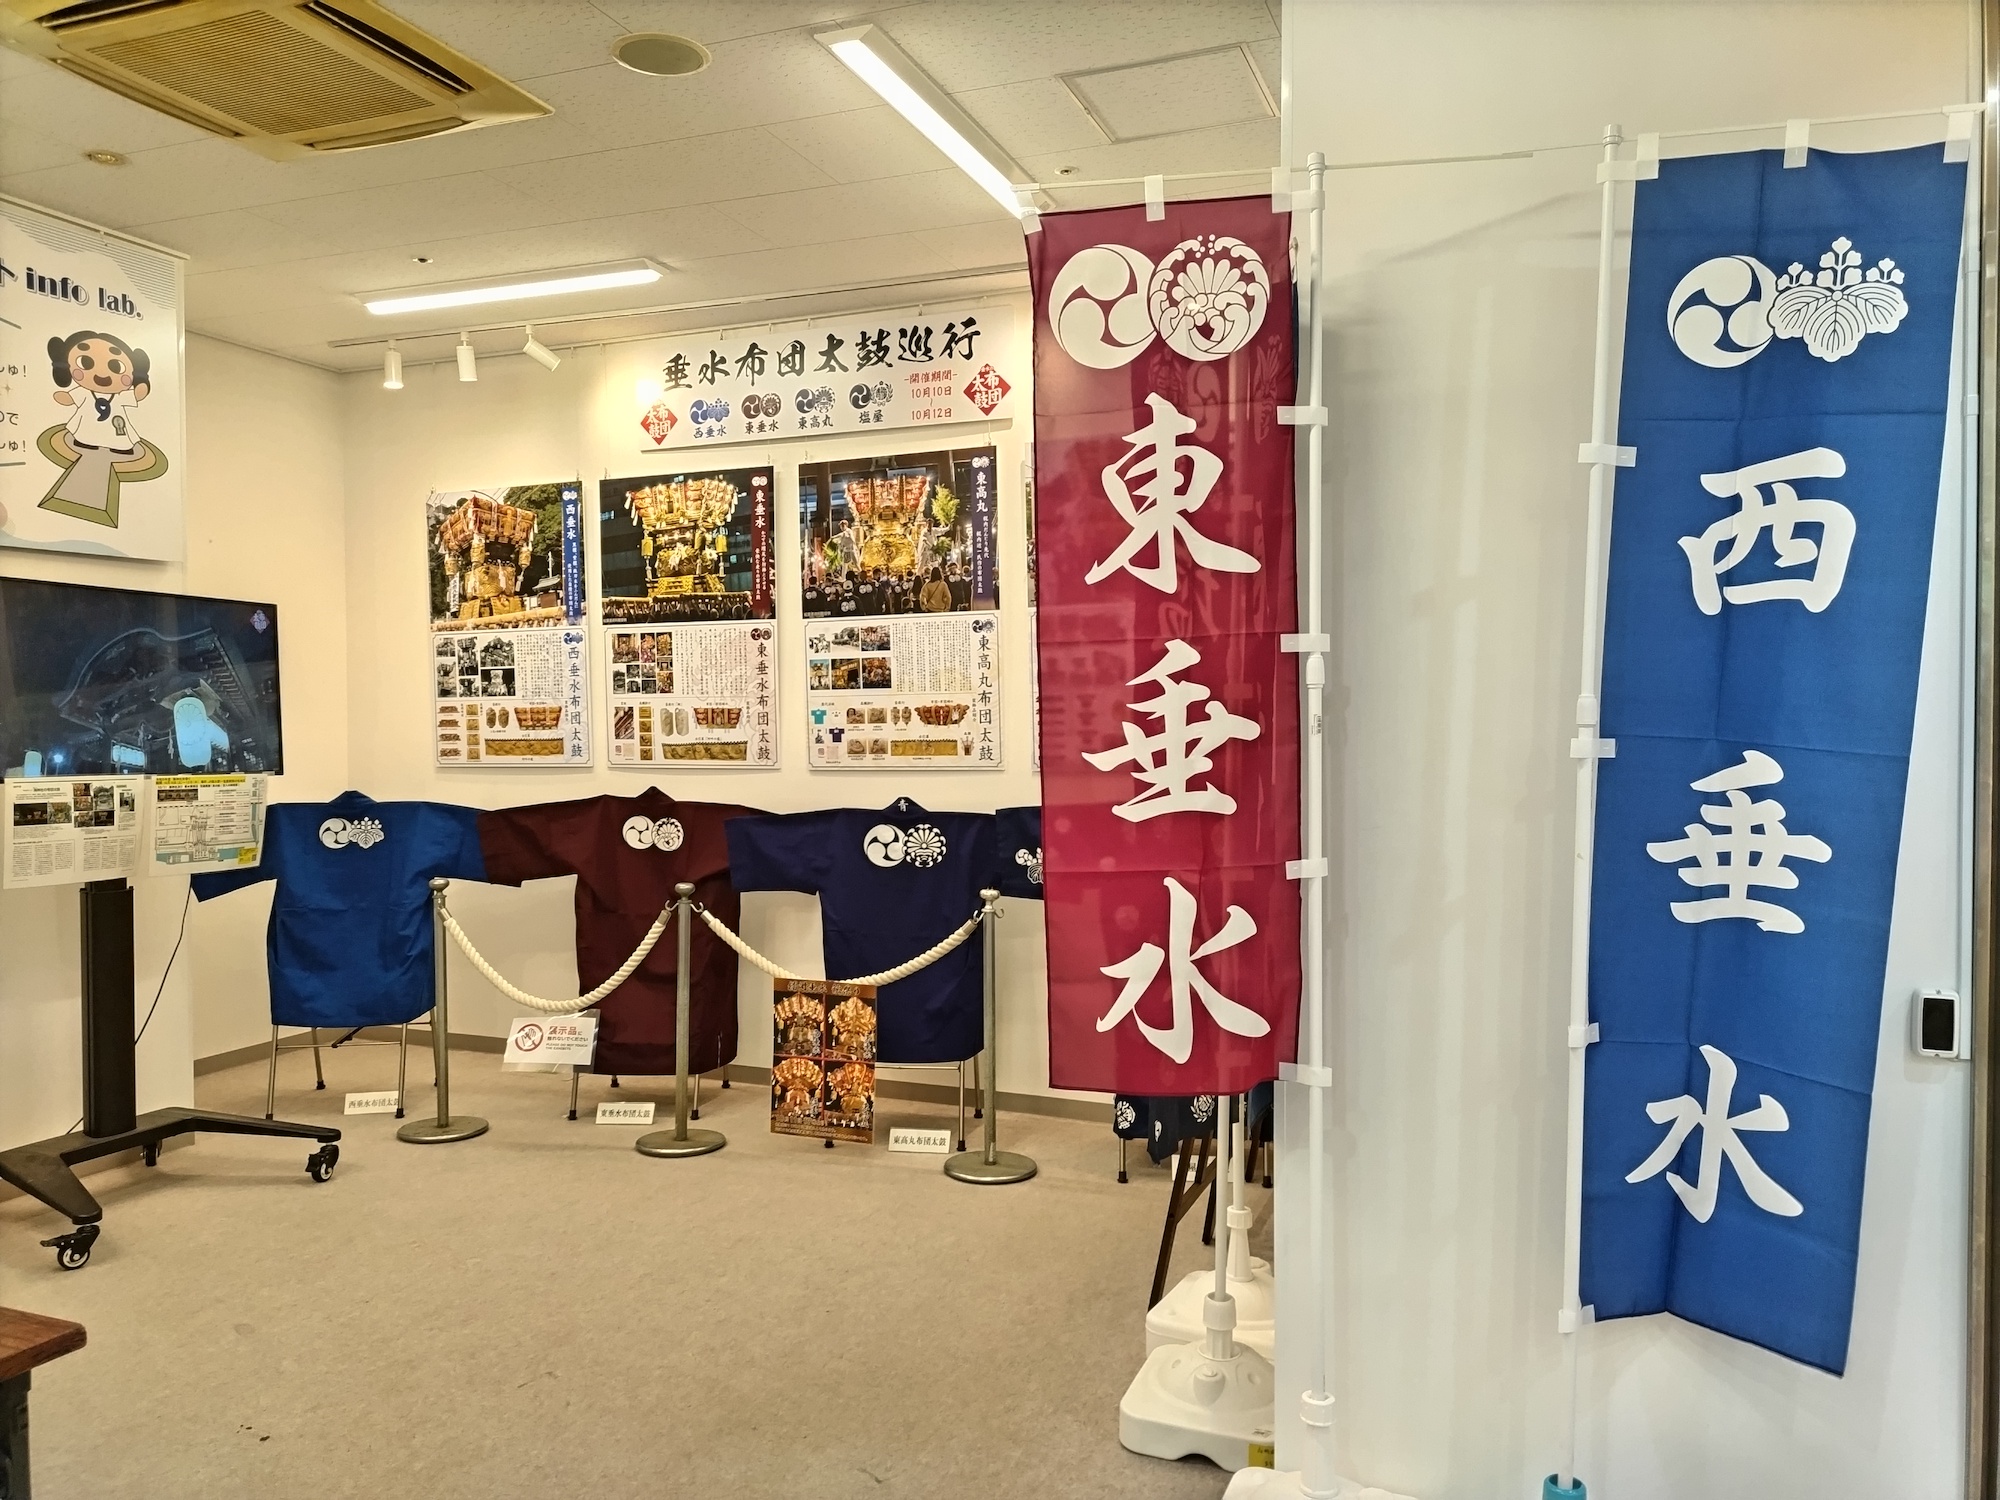 エキソト info lab.に「布団太鼓」の展示が登場！海神社秋祭りは10月10日〜12日に開催